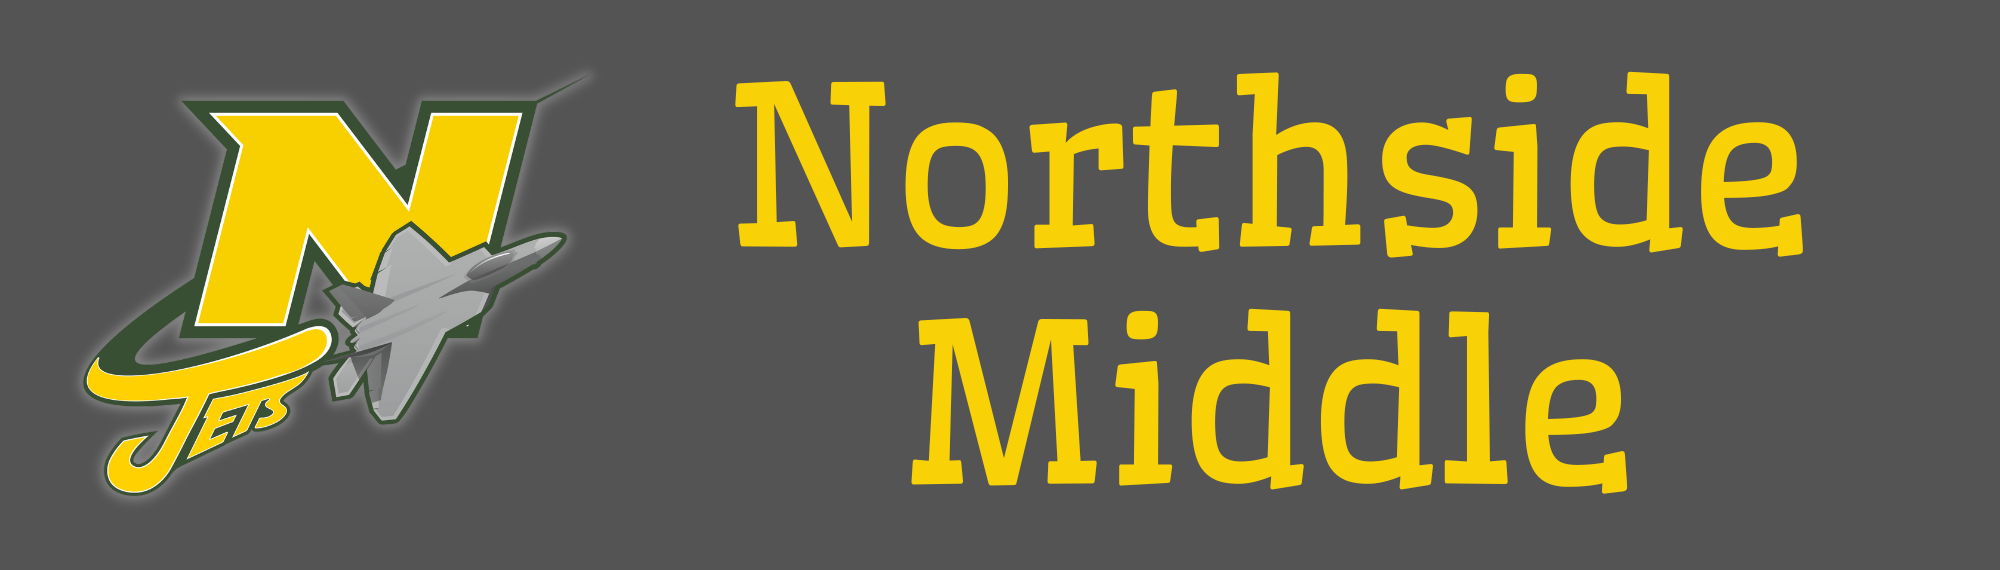 Northside Middle 